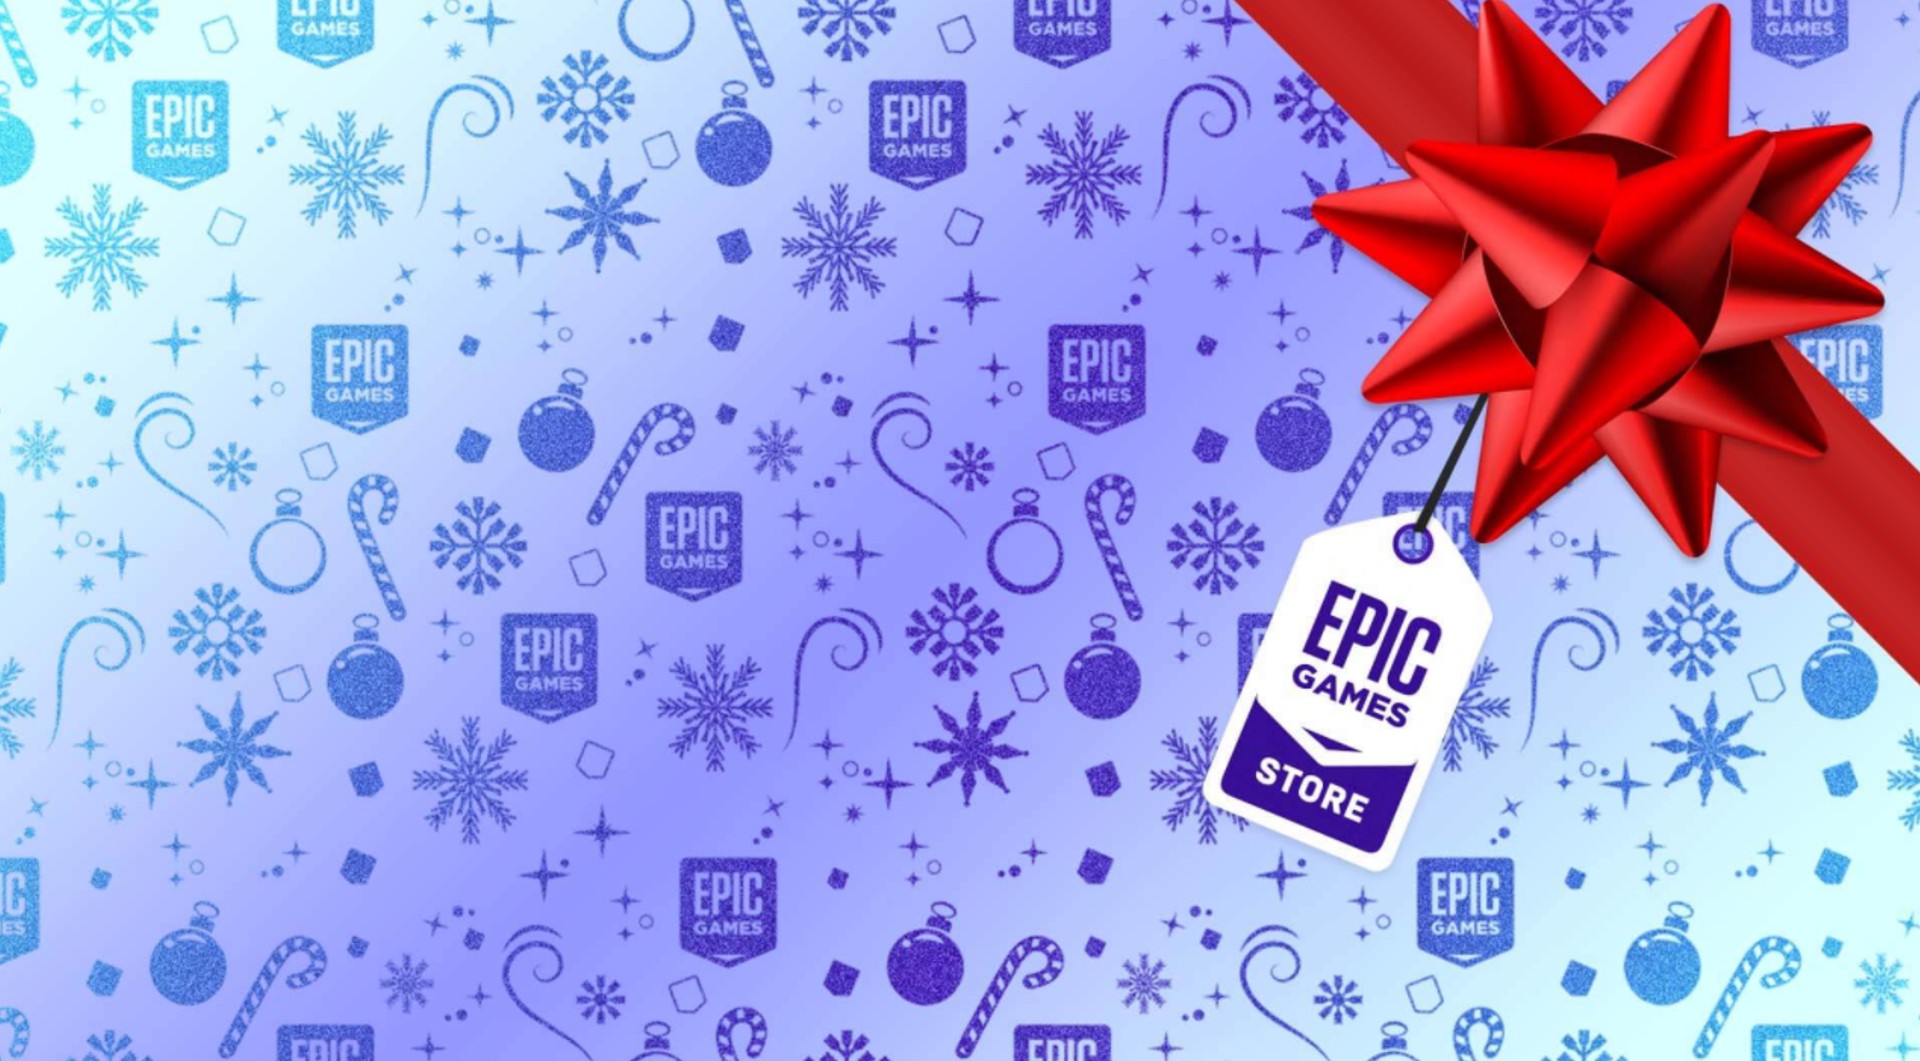 Epic Games Store ลดราคาเกมส่งท้ายปี พร้อมแจกคูปองลดราคาและเกมฟรีเพียบ